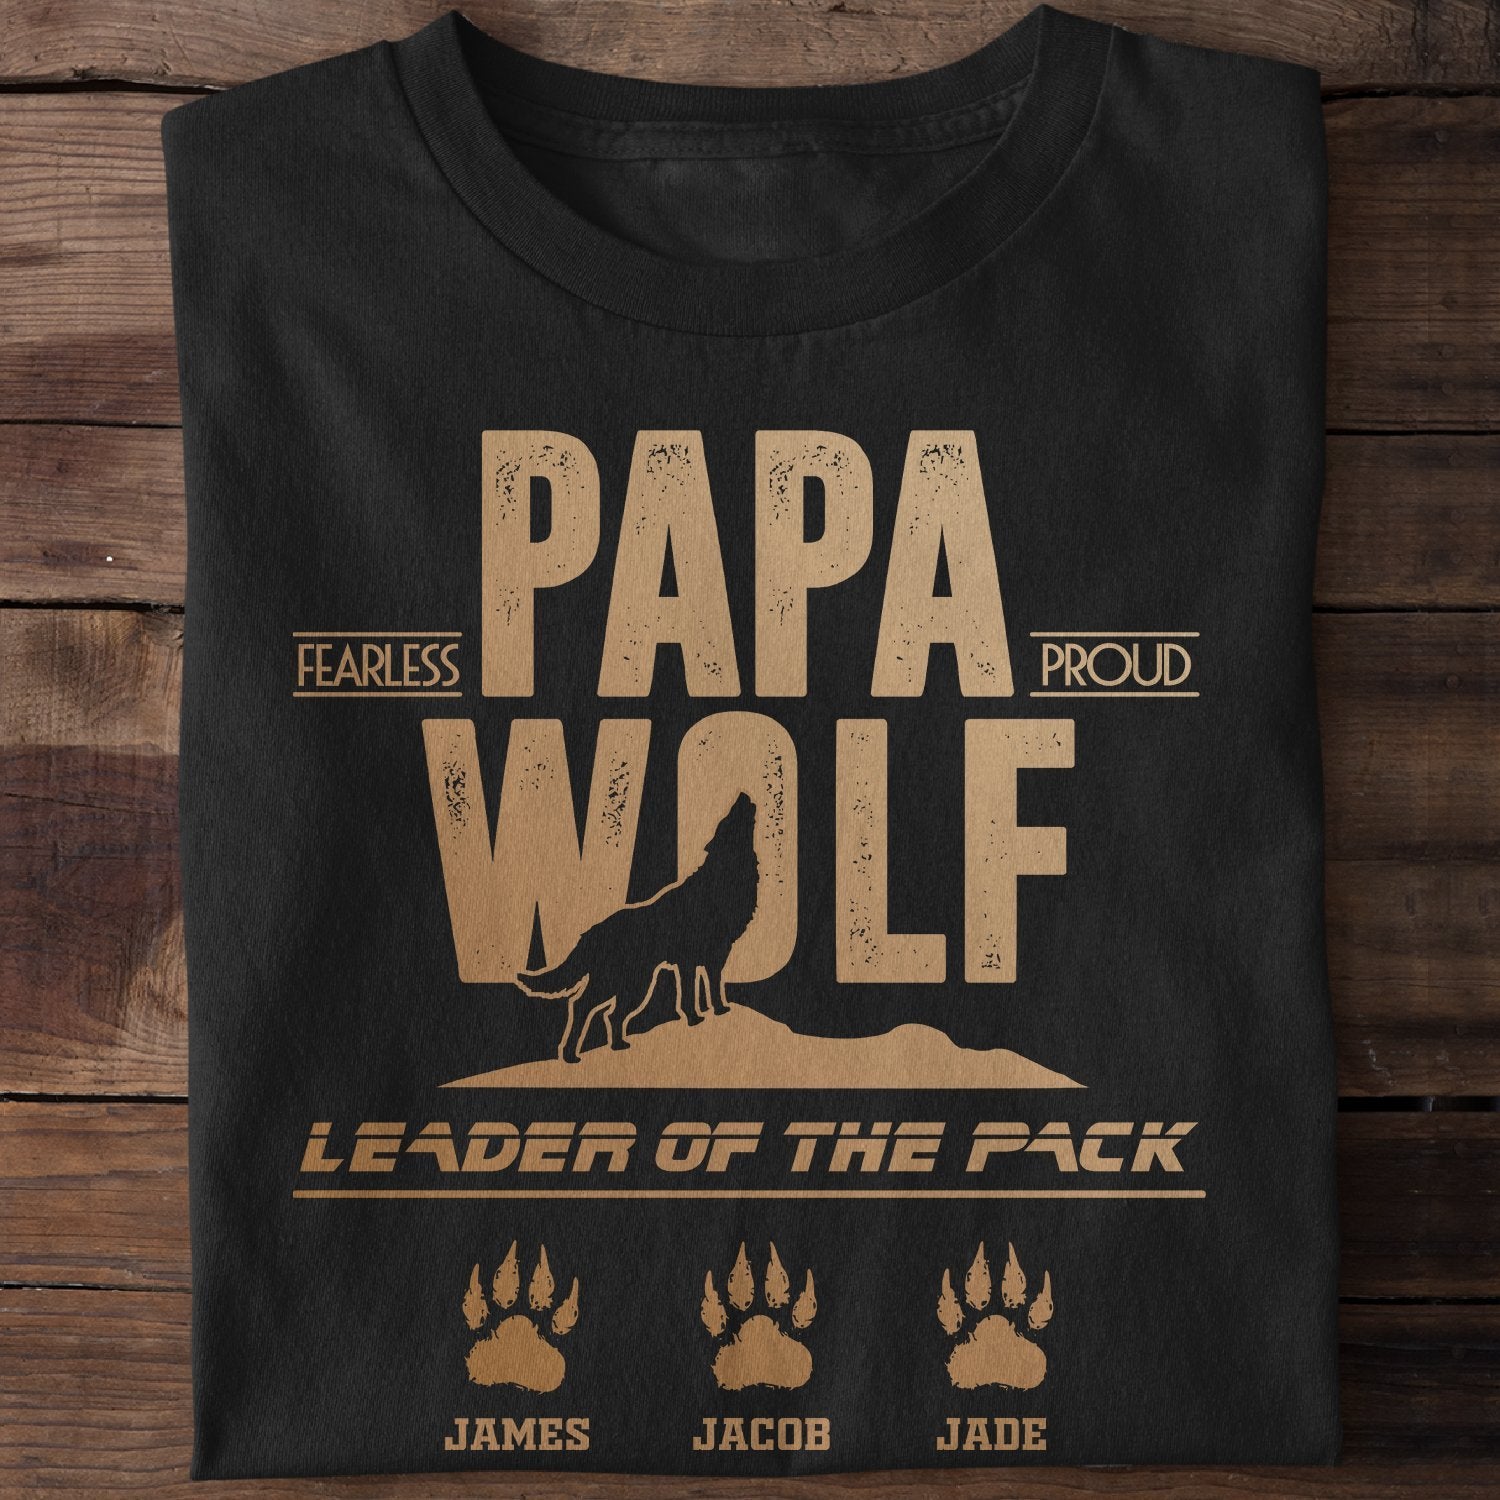 Papa Wolf Personalized Shirt